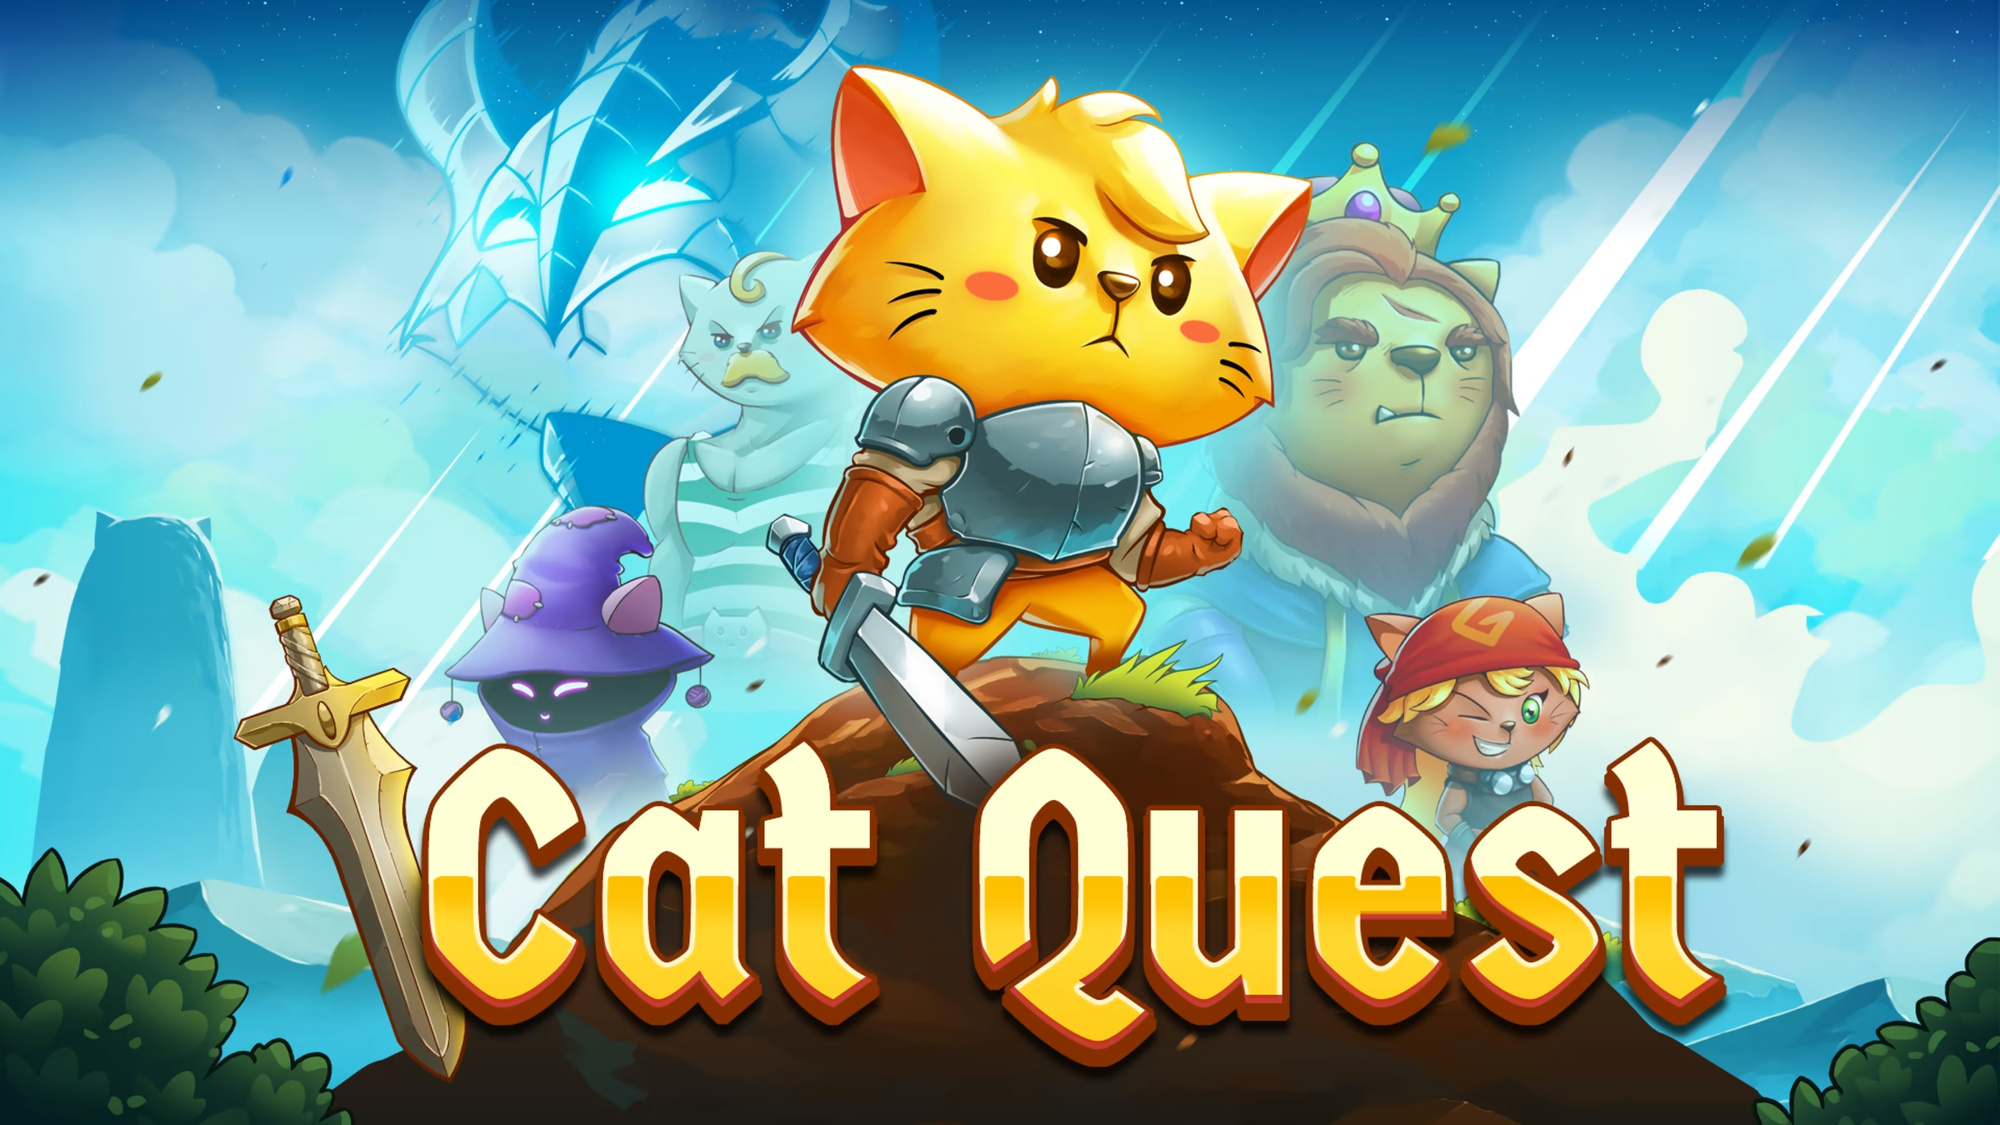 Cat Quest trò chơi nhập vai hành động được phát triển bởi The Gentlebros  Photo-1703821371121-1703821371821994782178-1703822145275-17038221463771540776183-1703825501971-17038255022121052205517